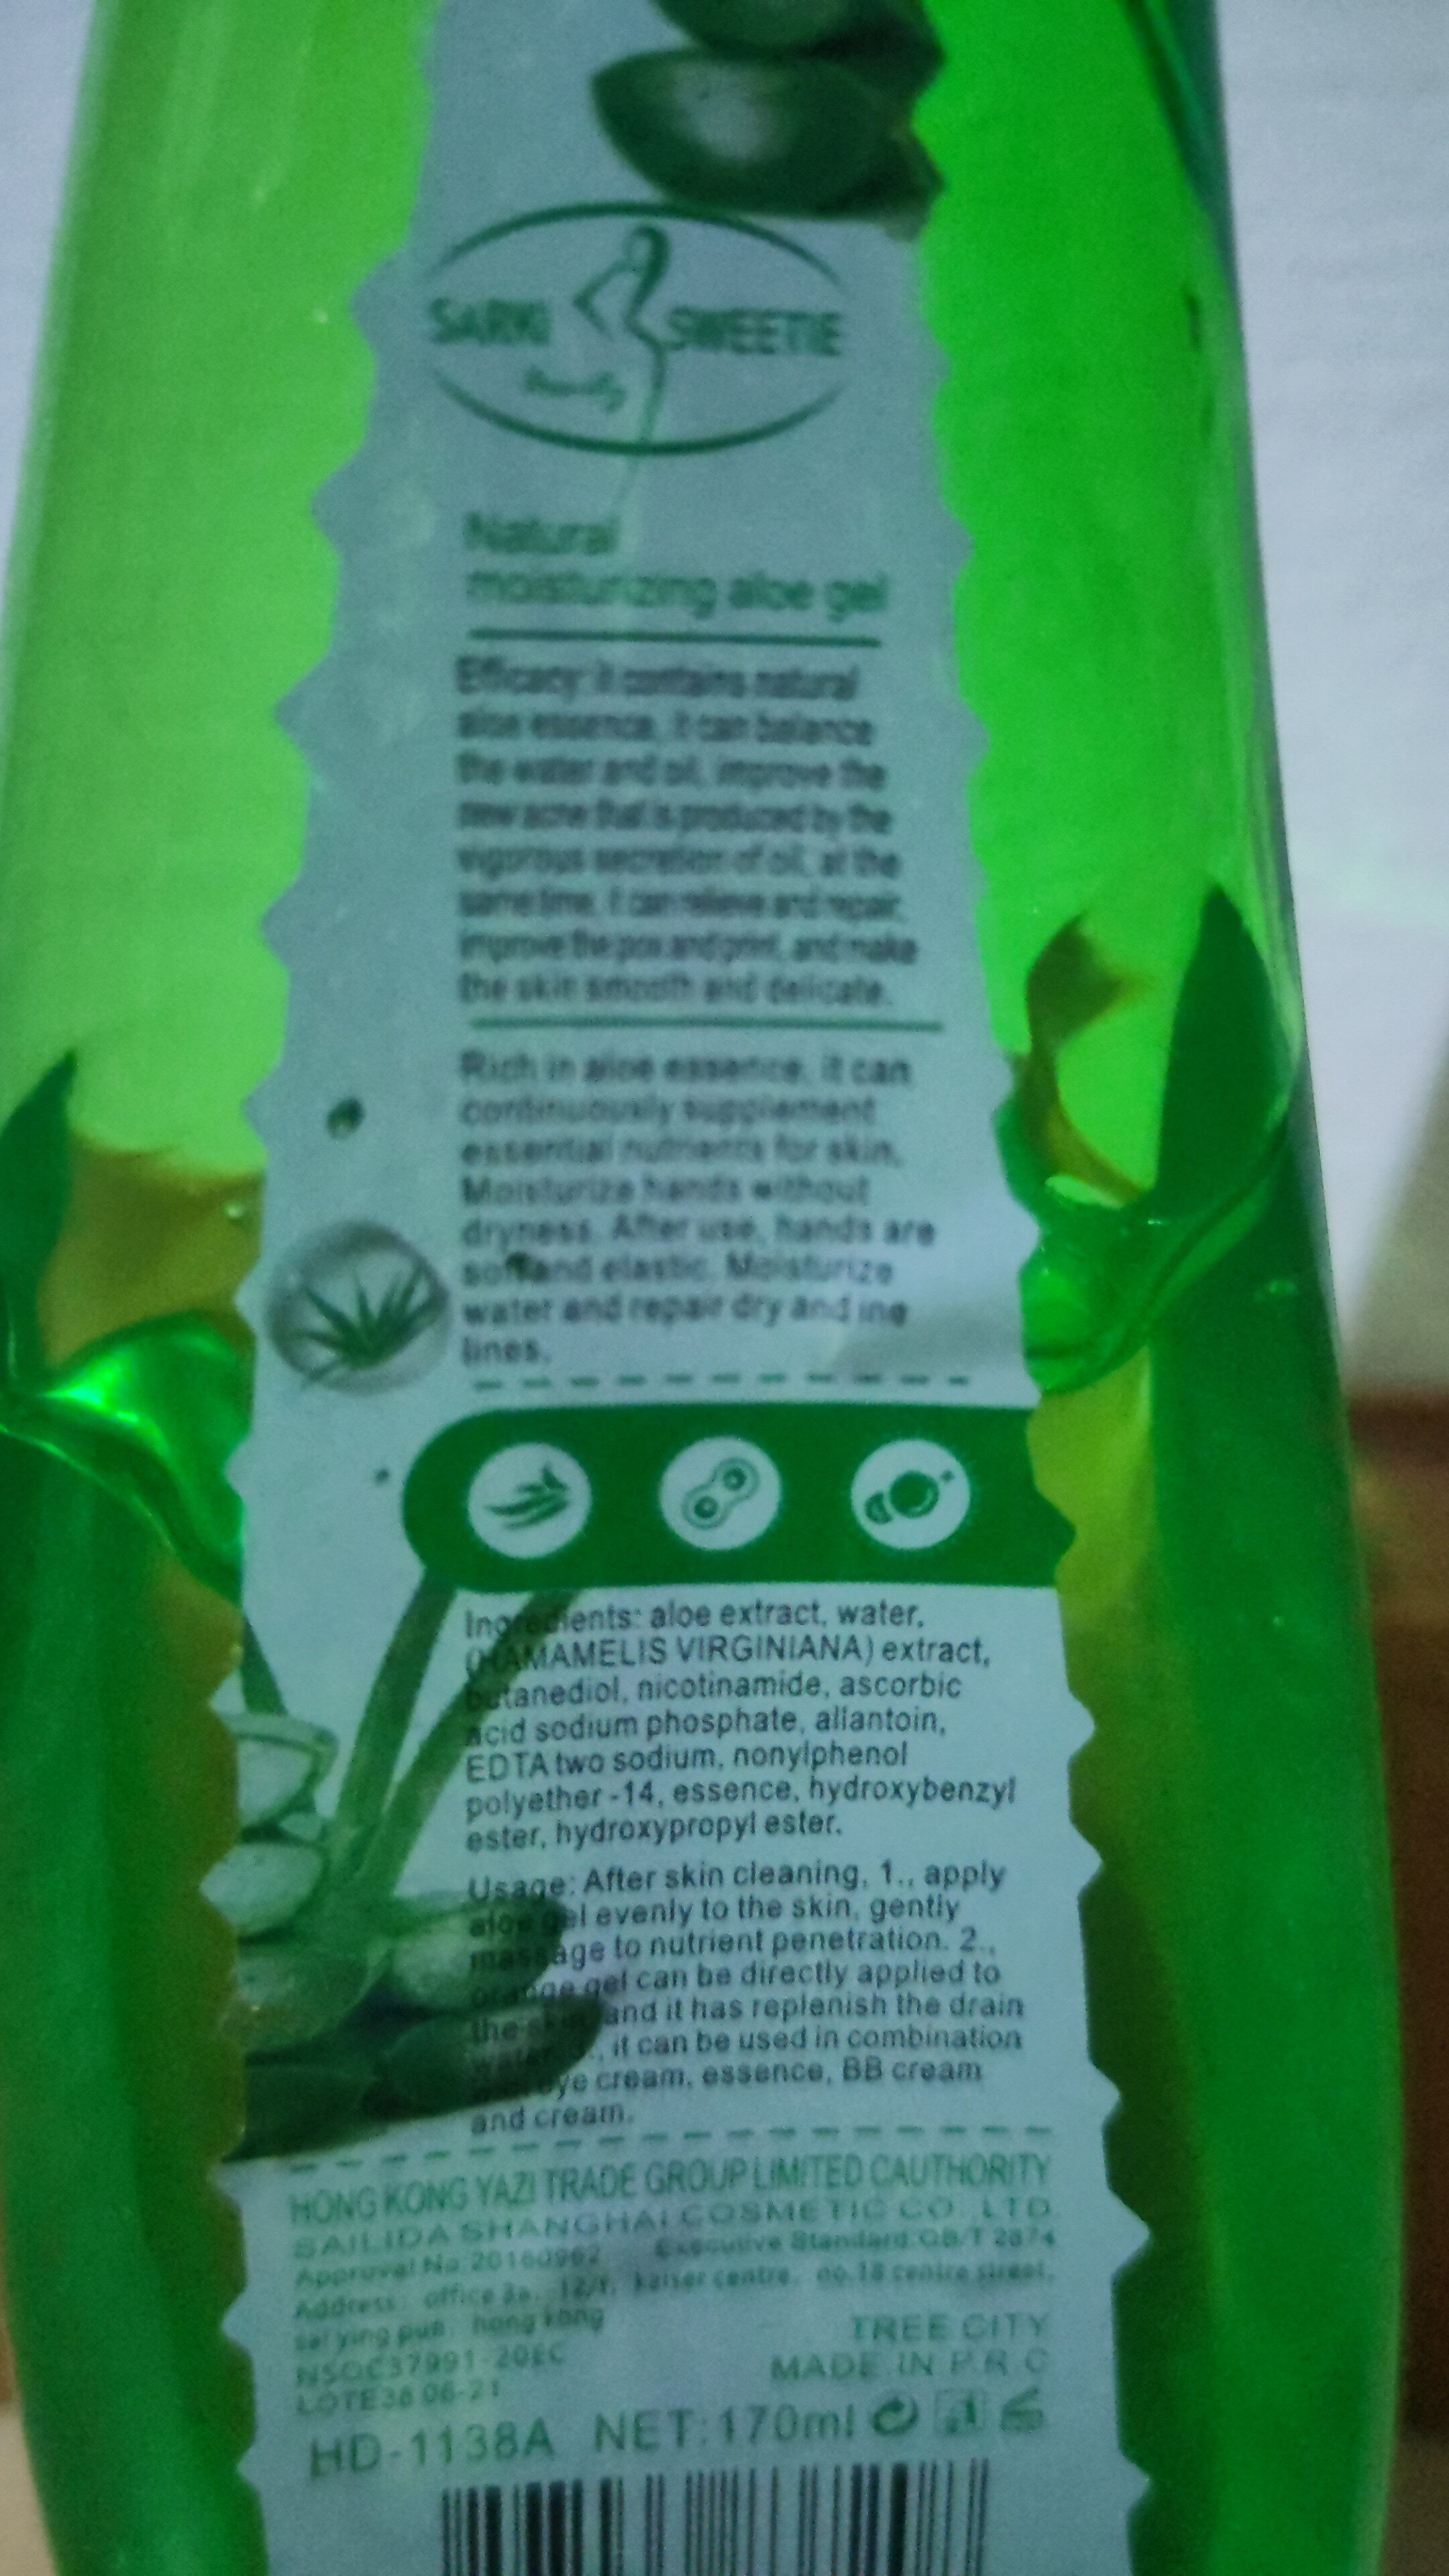 Aloe vera smoothing gel - Ingrédients - en